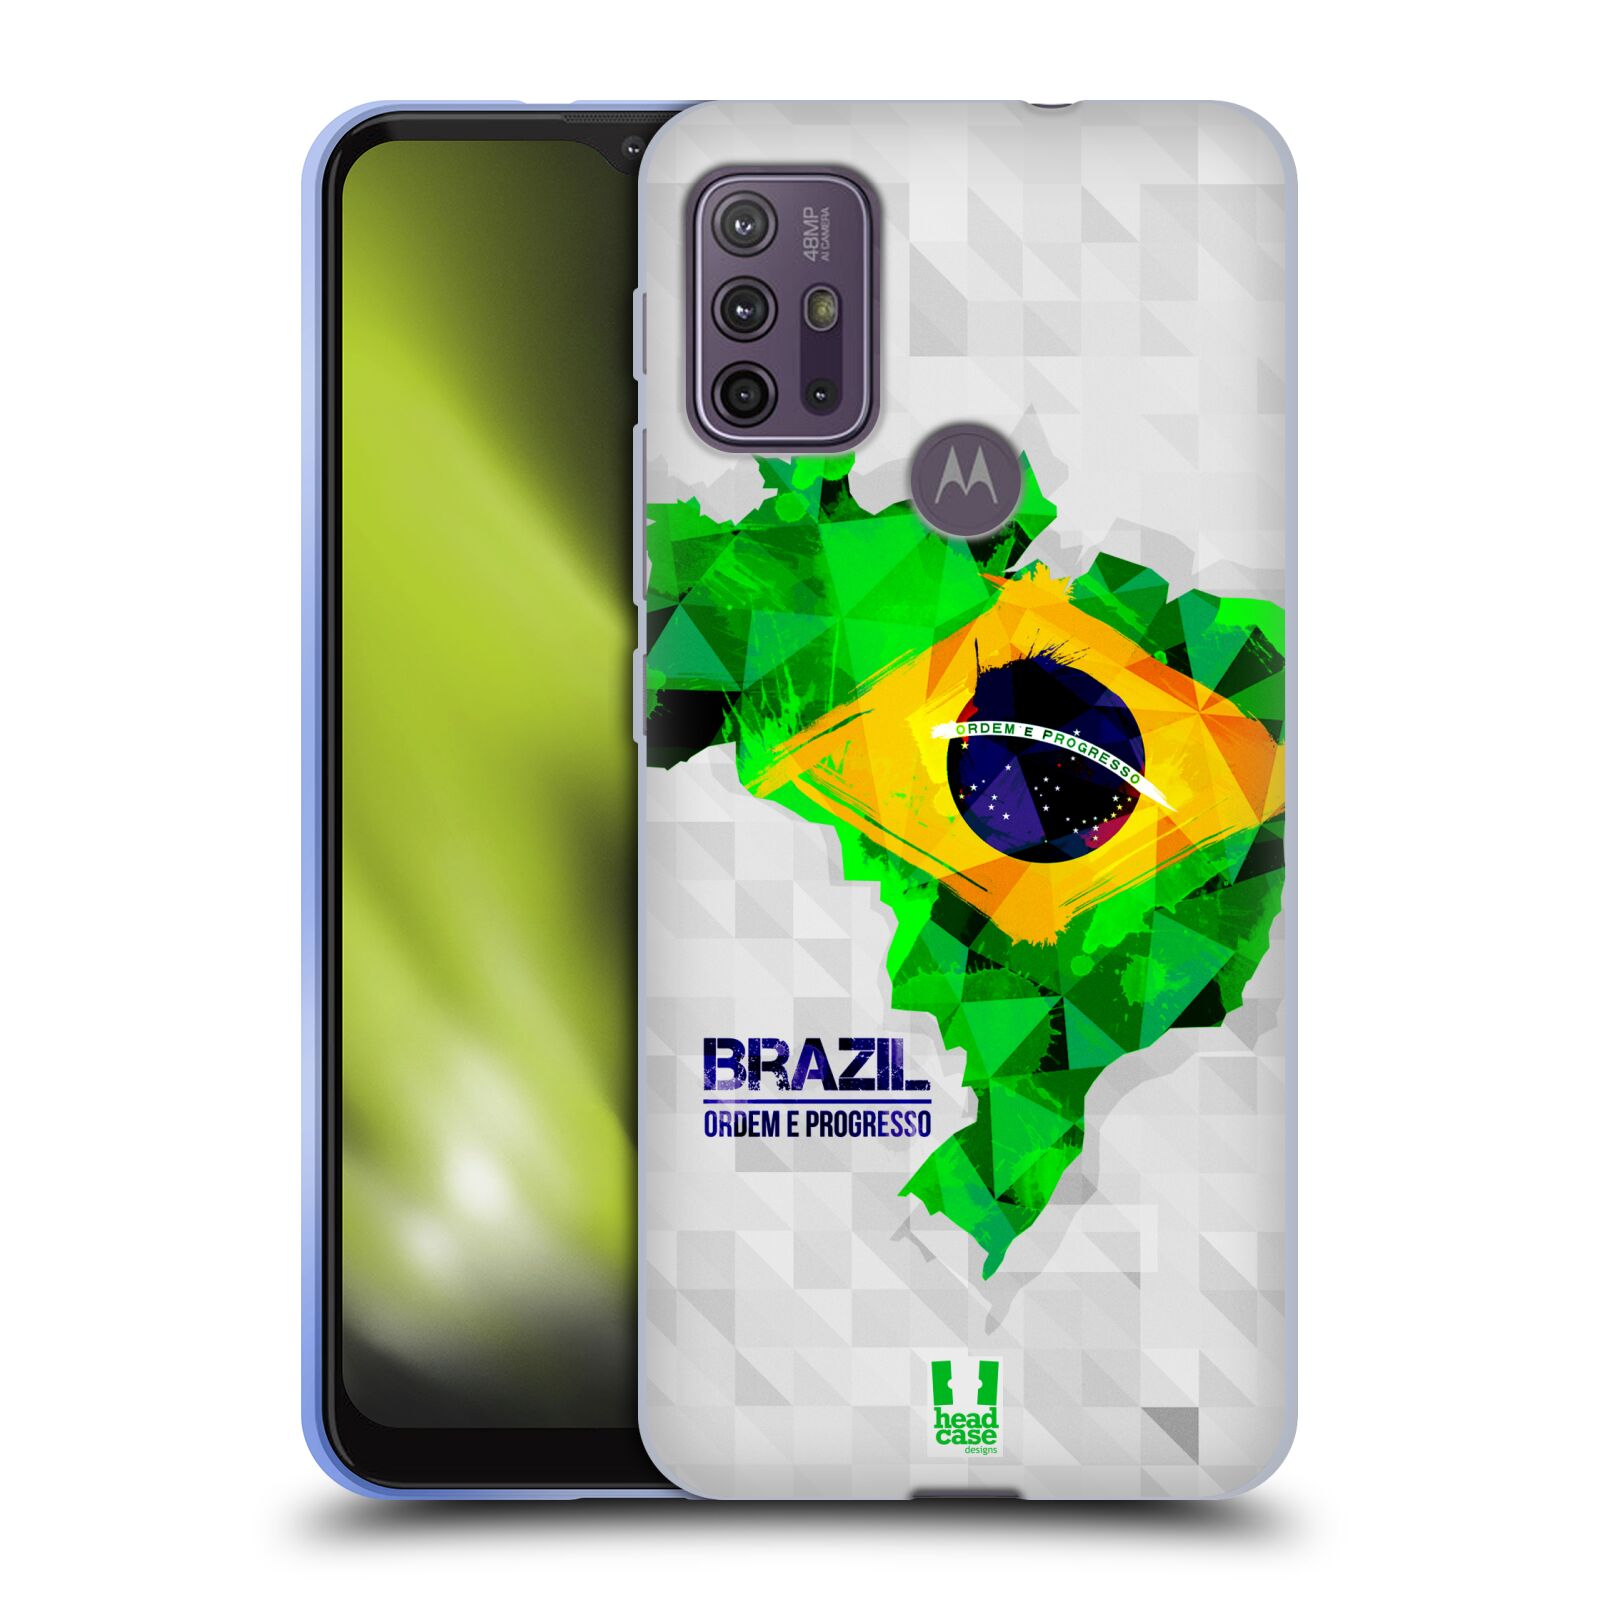 Silikonové pouzdro na mobil Motorola Moto G10 / G30 - Head Case - GEOMAPA BRAZÍLIE